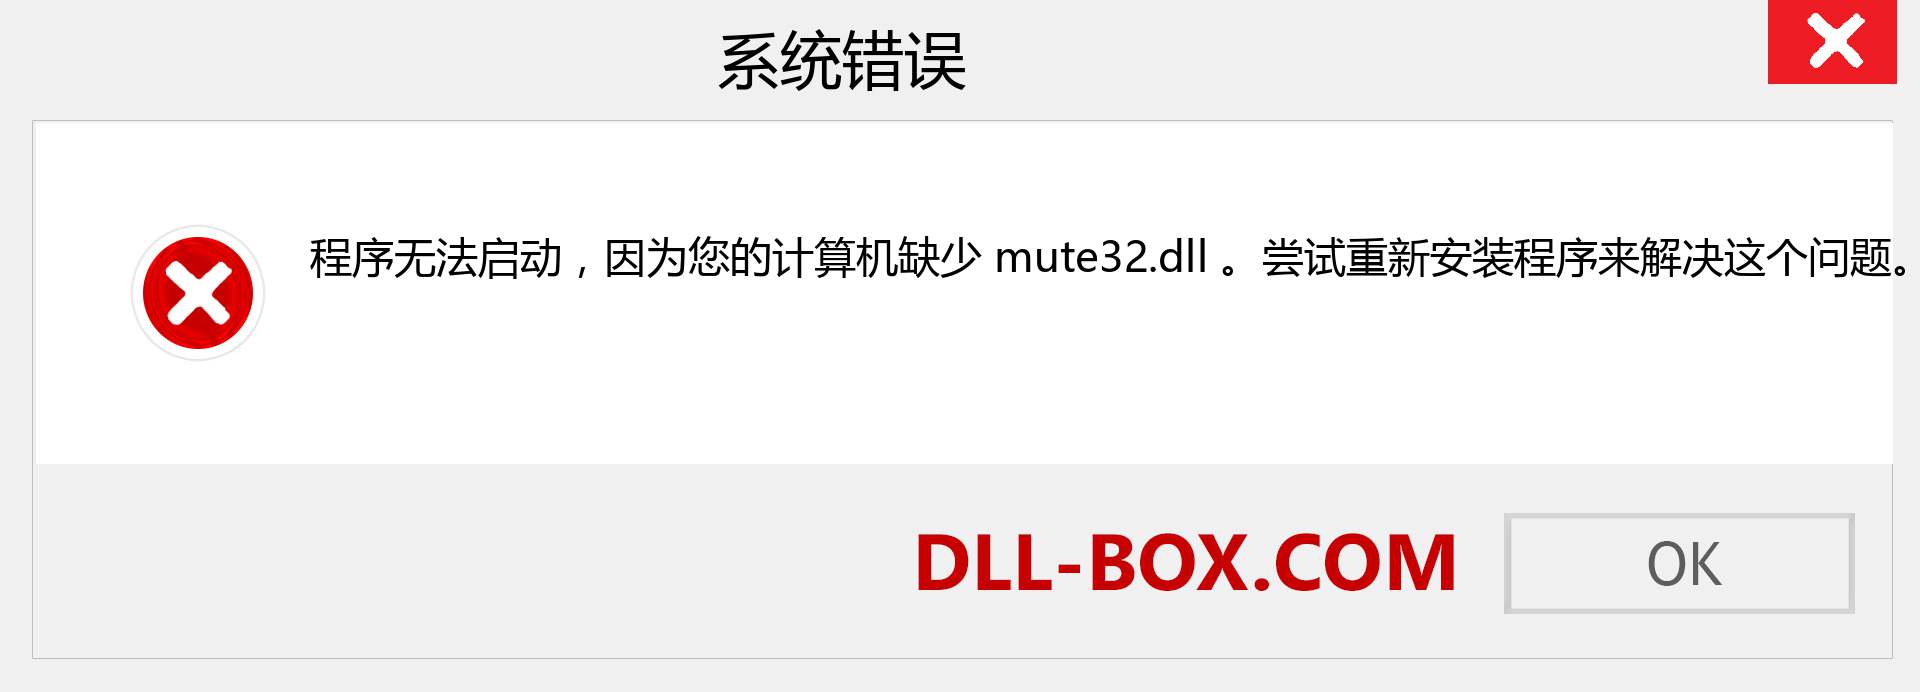 mute32.dll 文件丢失？。 适用于 Windows 7、8、10 的下载 - 修复 Windows、照片、图像上的 mute32 dll 丢失错误